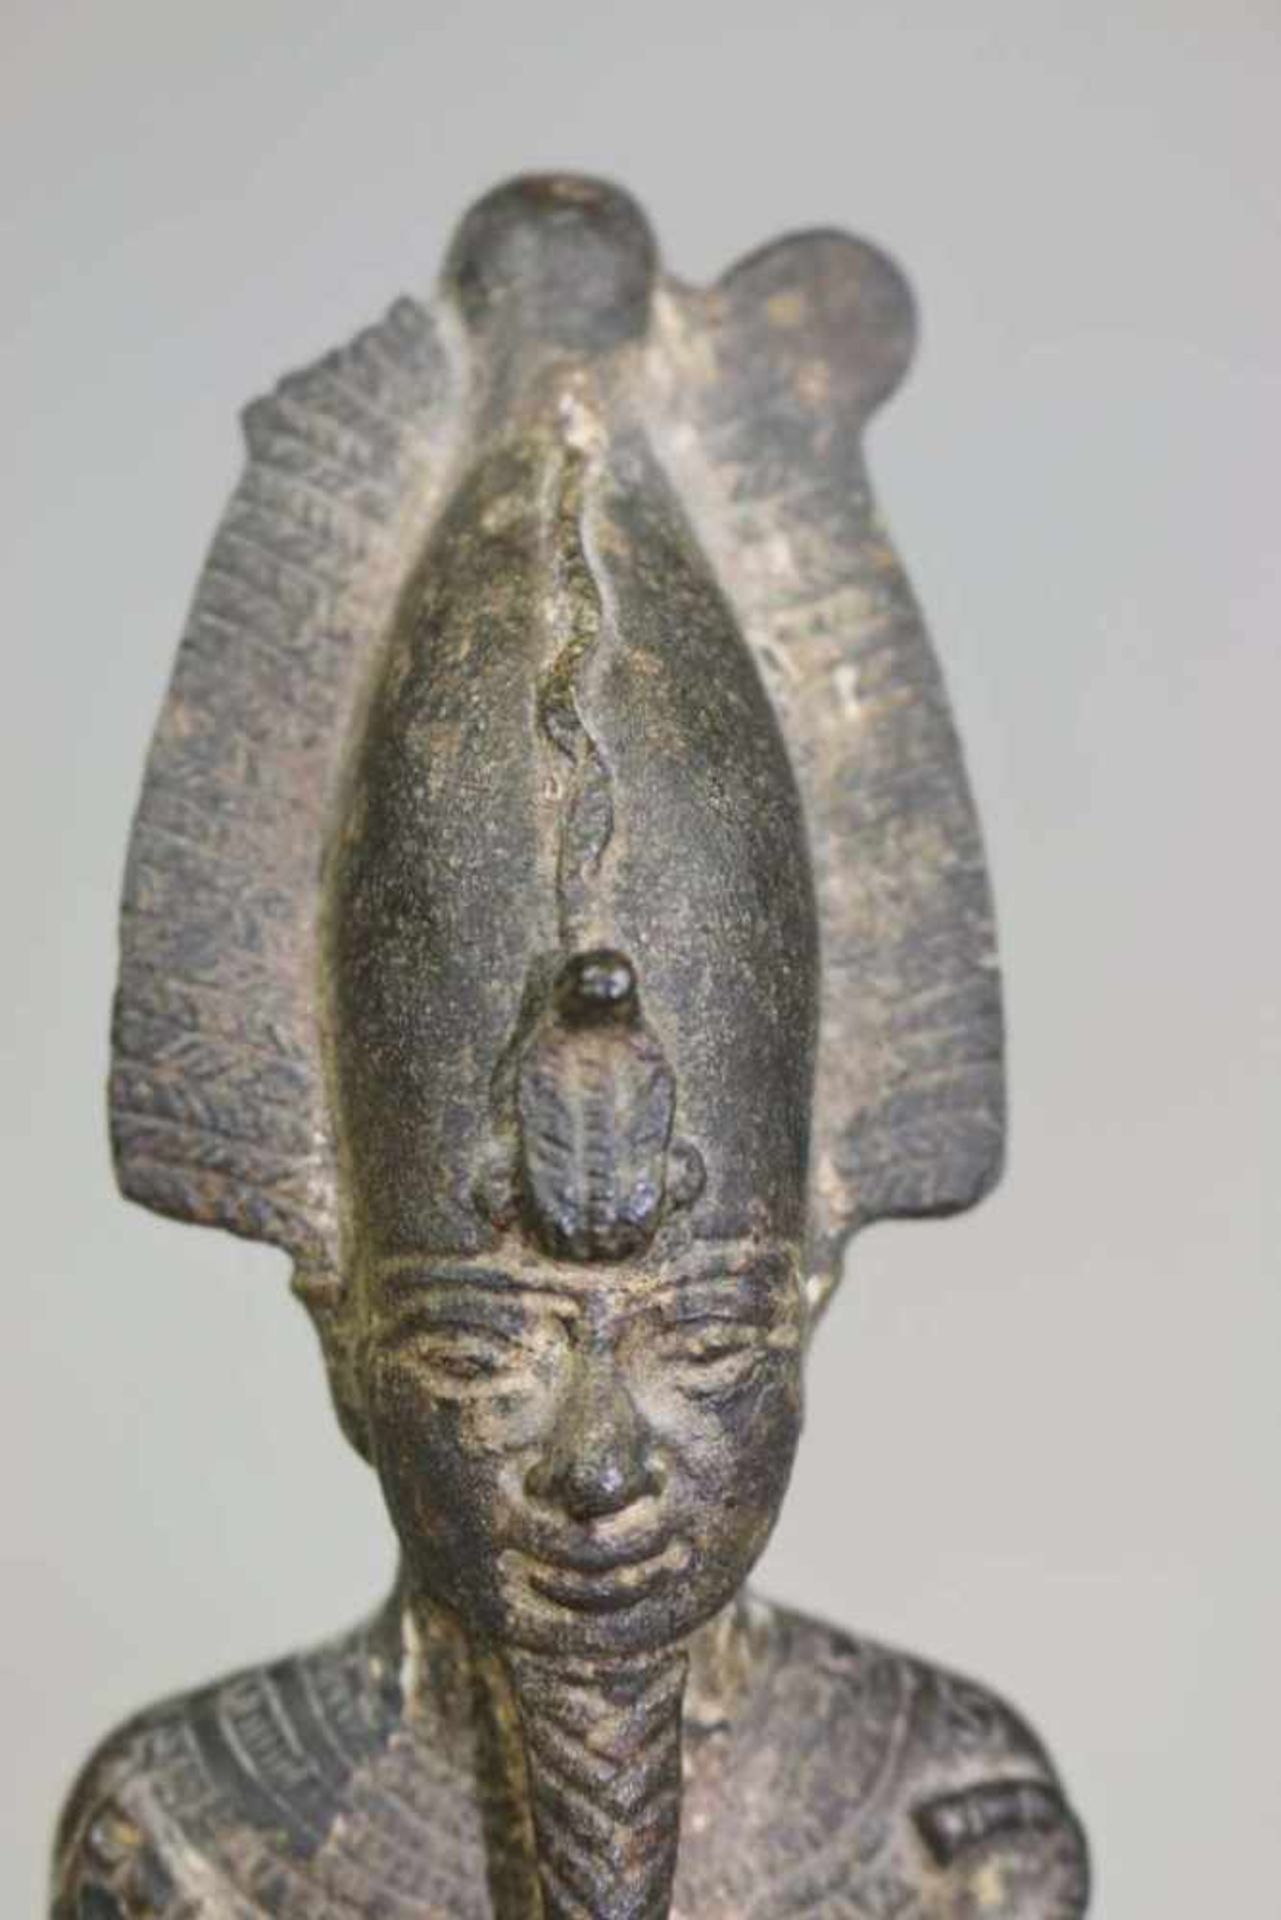 Statuette des Osiris, Ägypten, wohl 25. Dynastie, ca. 700 vor Chr., Bronzeguss. Höhe ohne Sockel: - Bild 2 aus 3